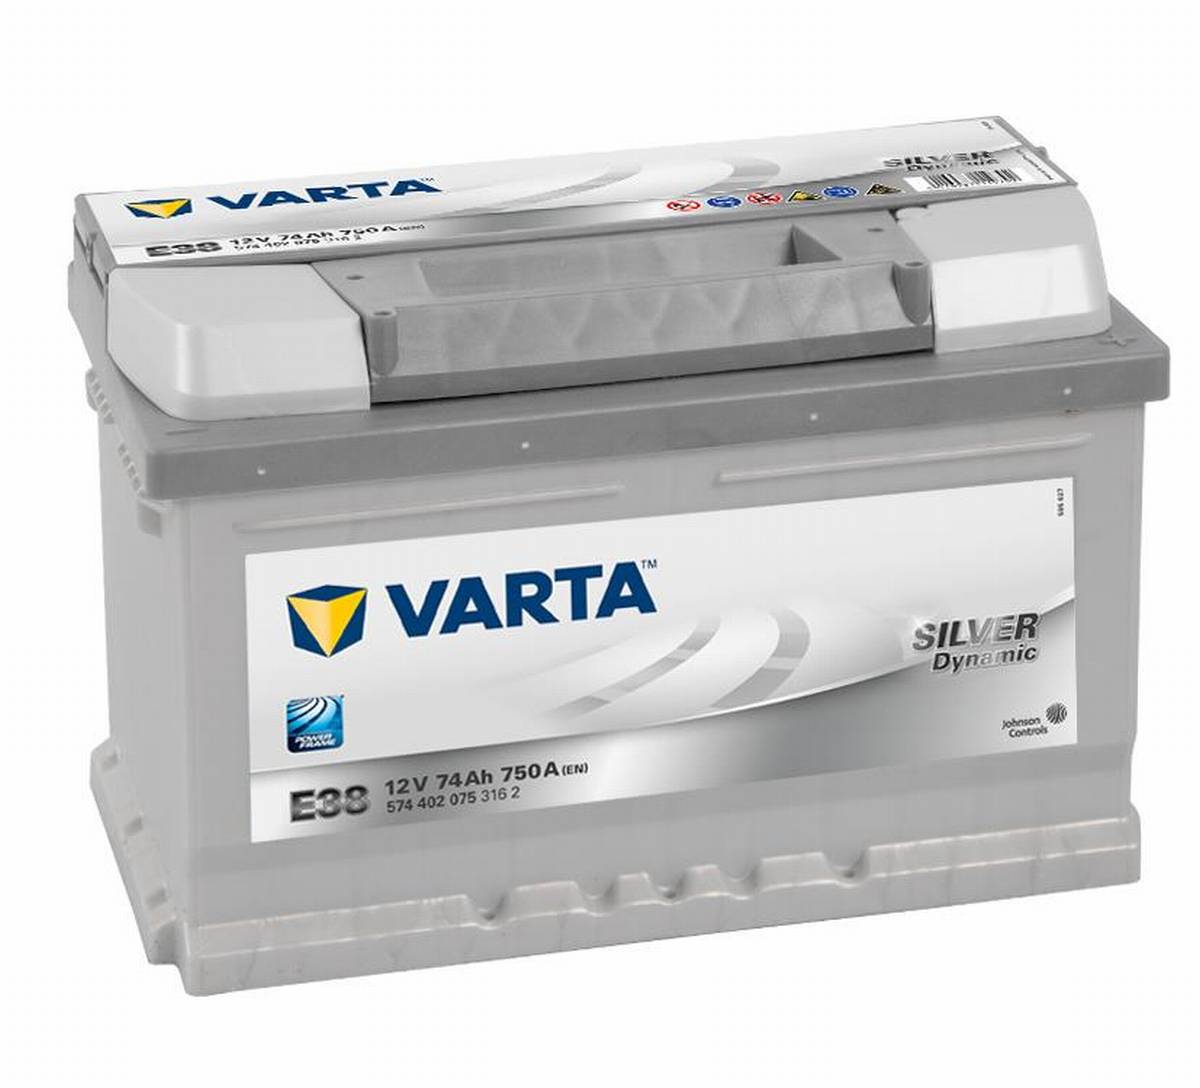 Varta SILVER Dynamic 574 402 075 3162 E38 12Volt 74Ah 750A/E car battery, Starter batteries, Boots & Marine, Batteries by application